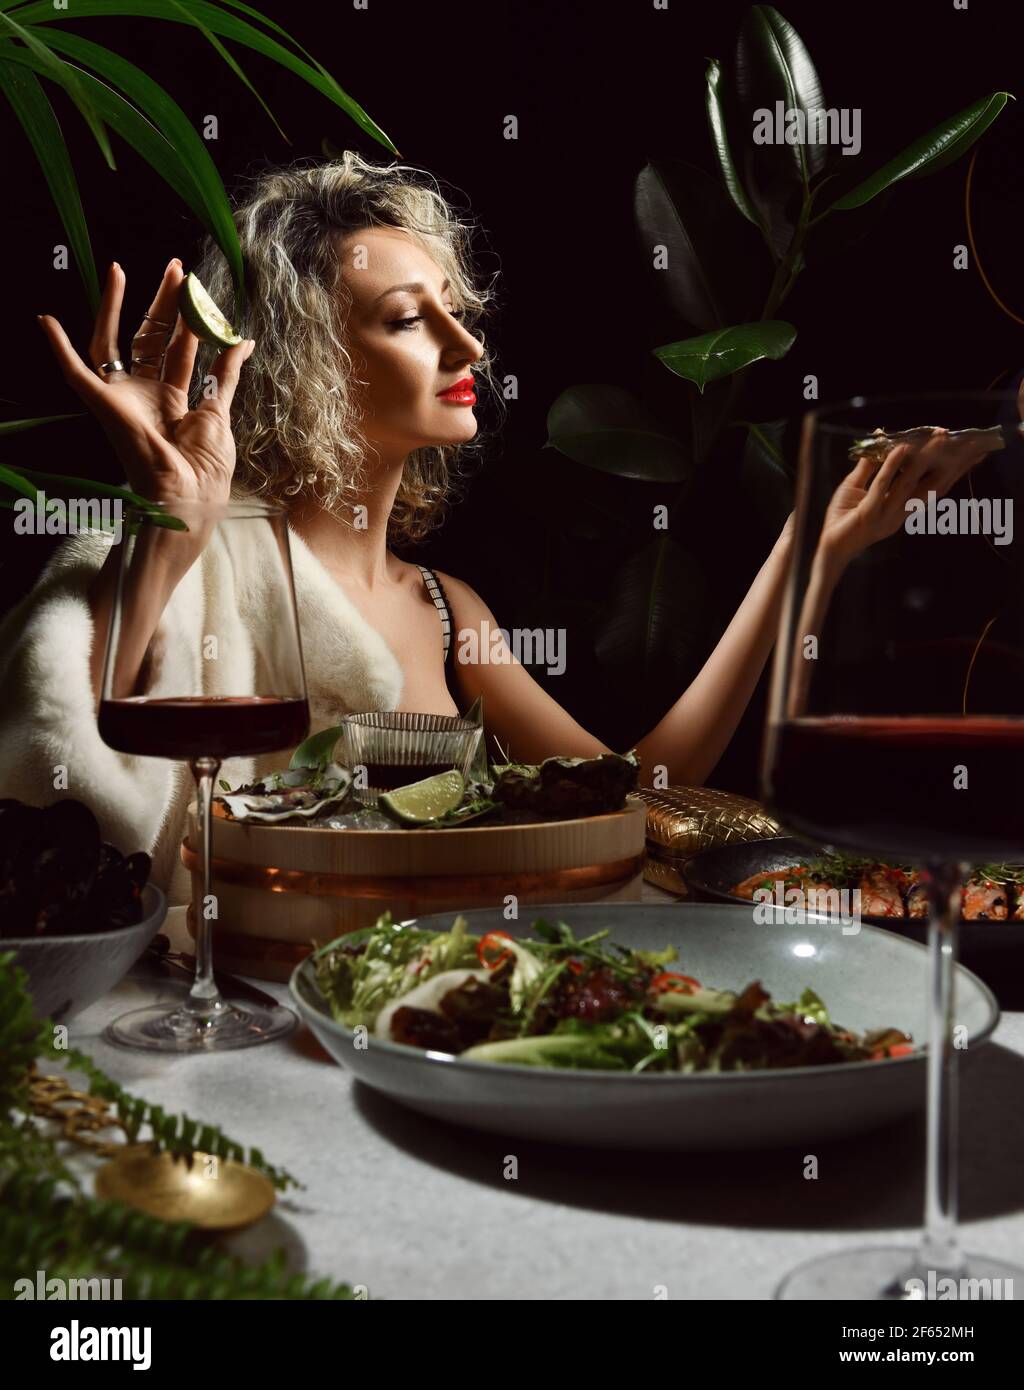 Junge blonde Frau in Abendkleid mit tiefem Ausschnitt und Pelz sitzen in Meeresfrüchte-Restaurant auf einem Date Stockfoto